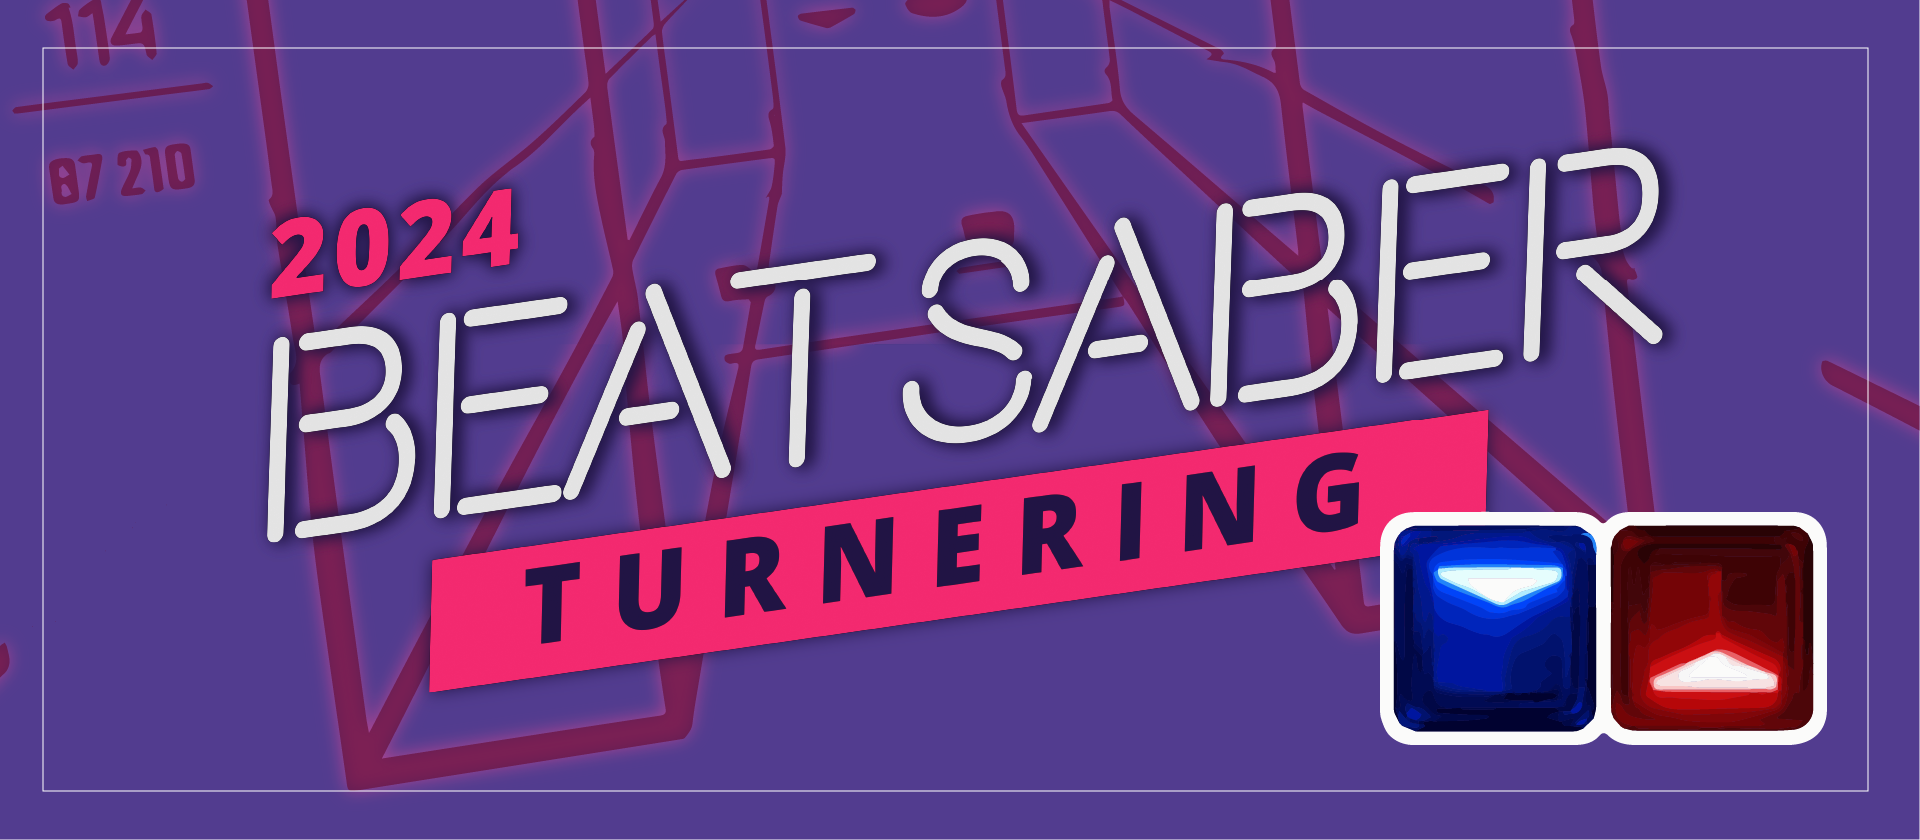 Annonsbild för Beat Saber-turnering.